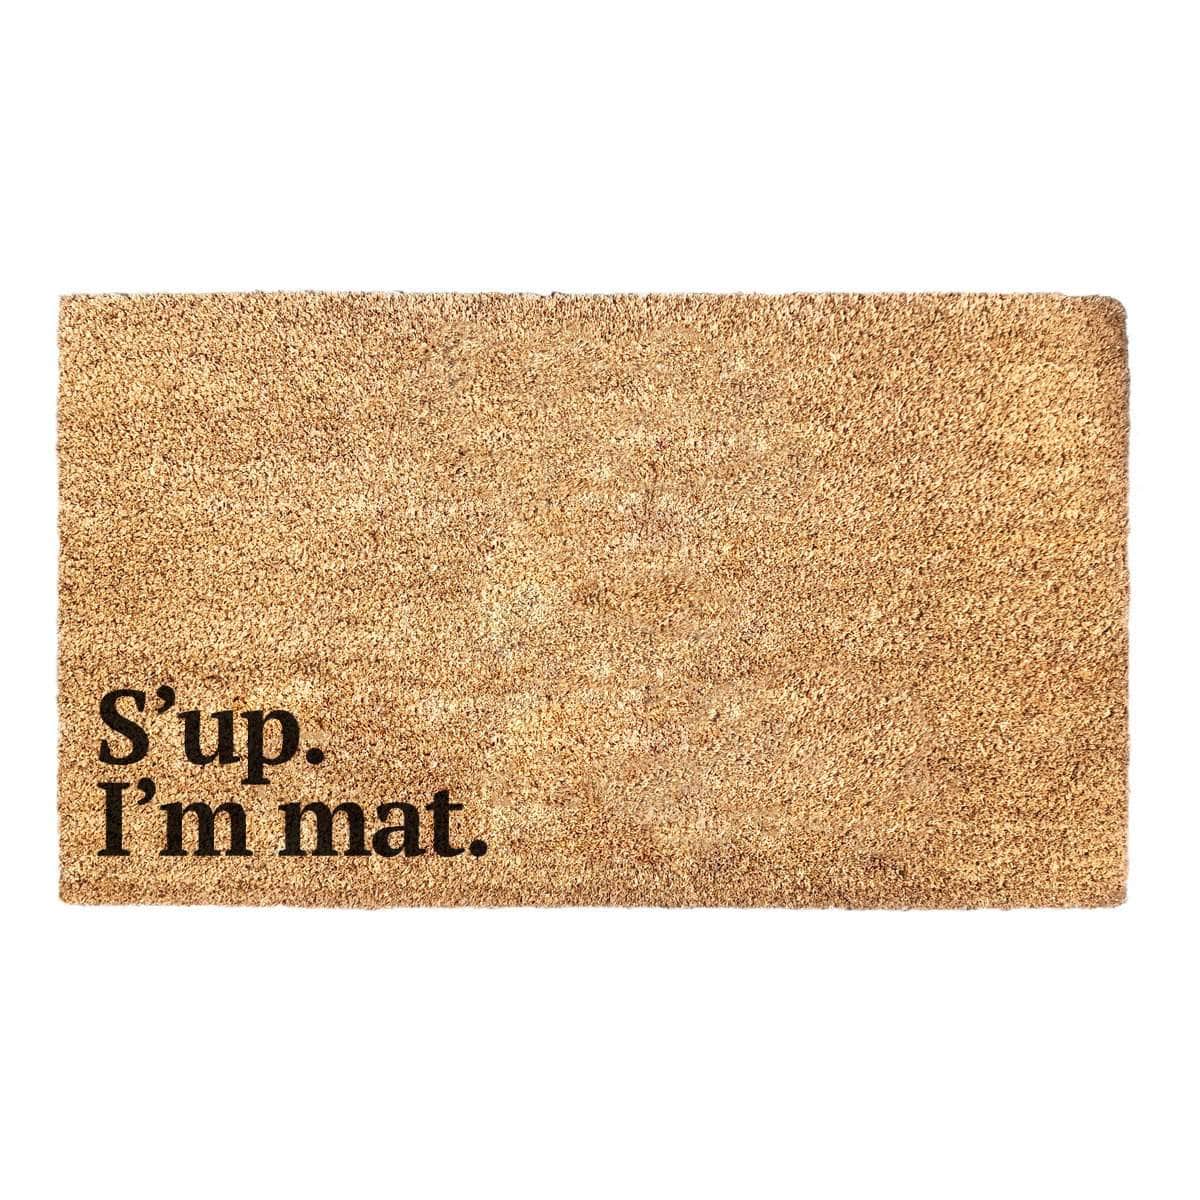 S'up. I'm mat. - Doormat